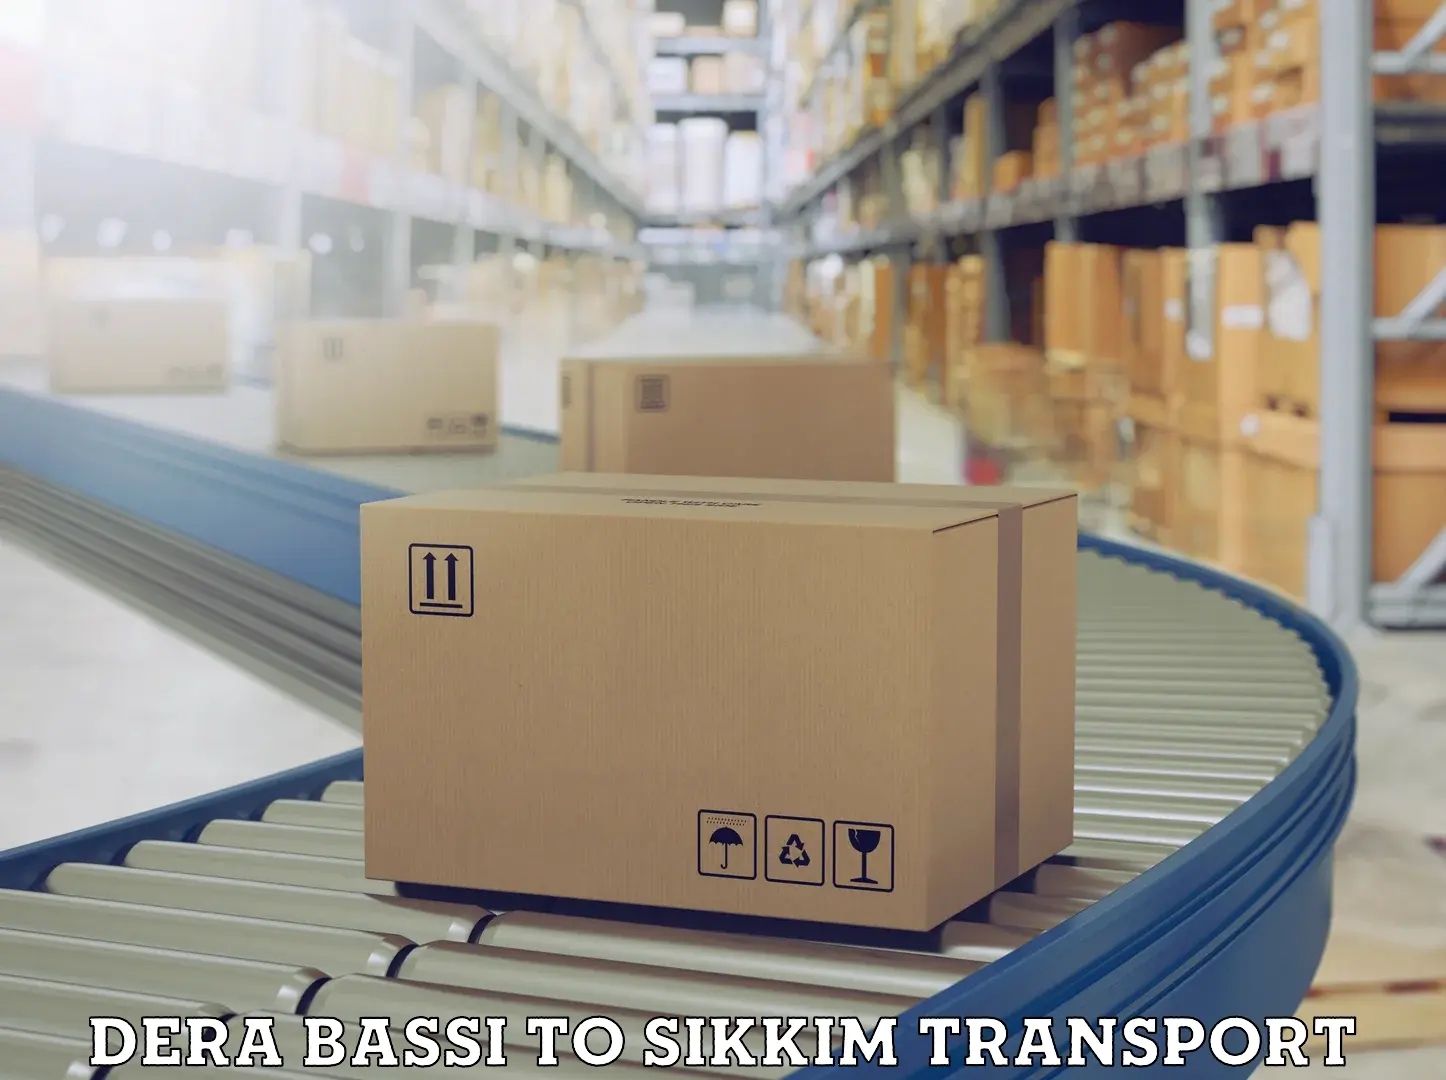 Cargo transport services Dera Bassi to West Sikkim